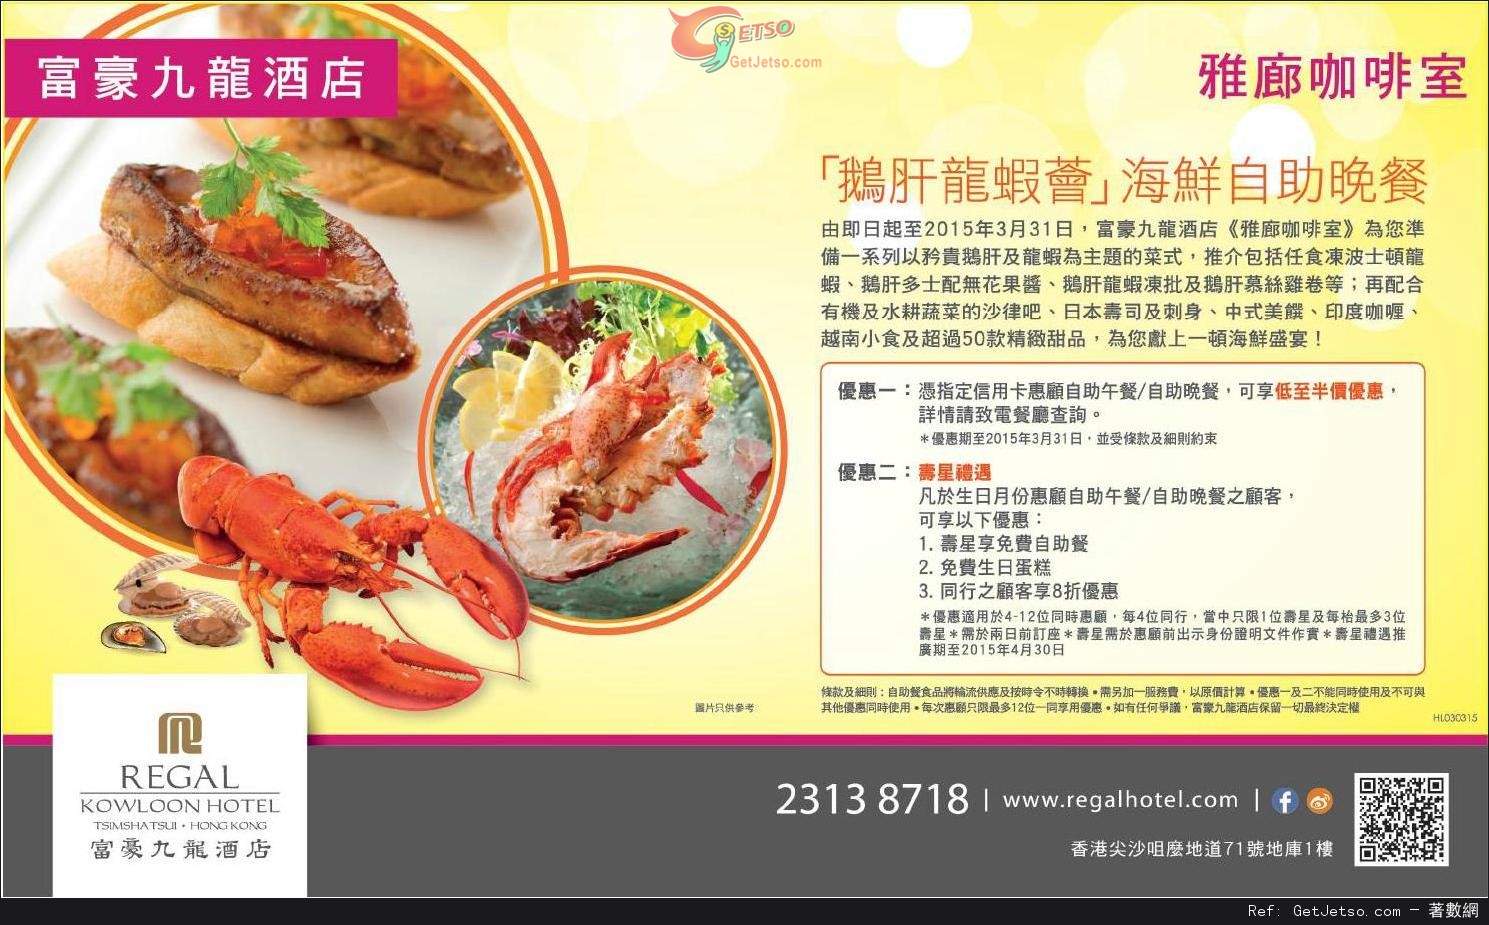 富豪九龍酒店生日月份享免費自助餐優惠(至15年4月30日)圖片1